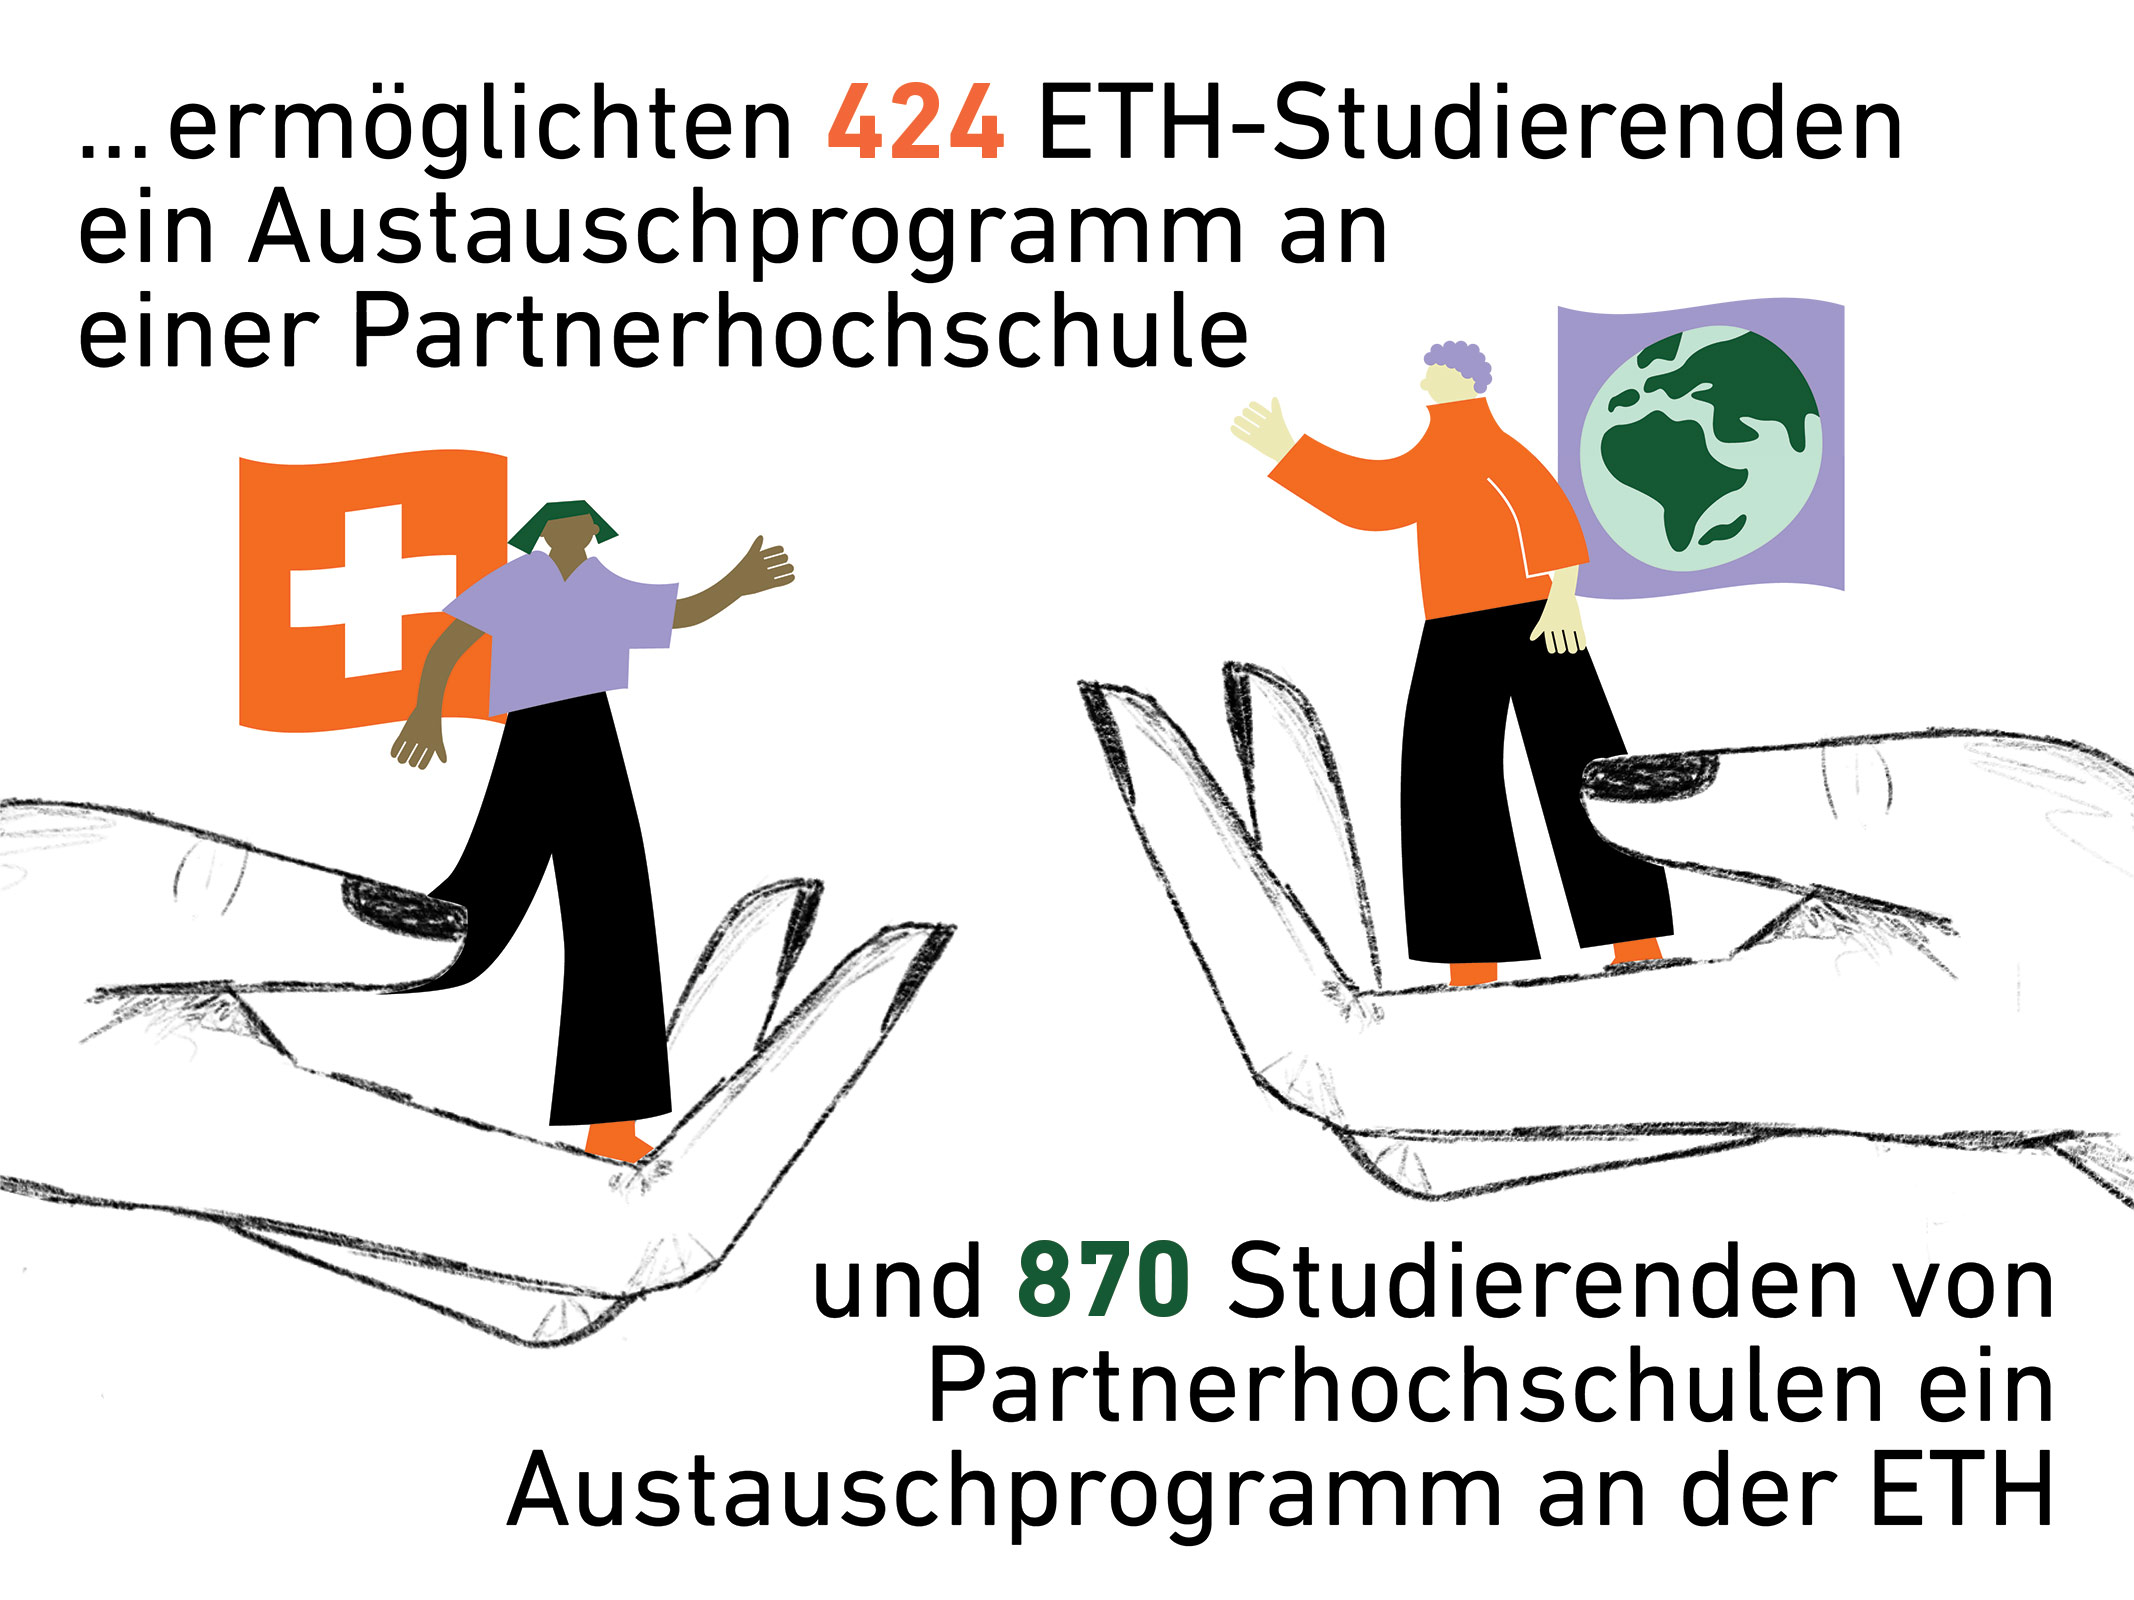 Die AkD ermöglichten 424 ETH-Studierenden ein Austauschprogramm an einer Partnerhochschule und 870 Studierenden von Partnerhochschulen ein Austauschprogramm an der ETH.